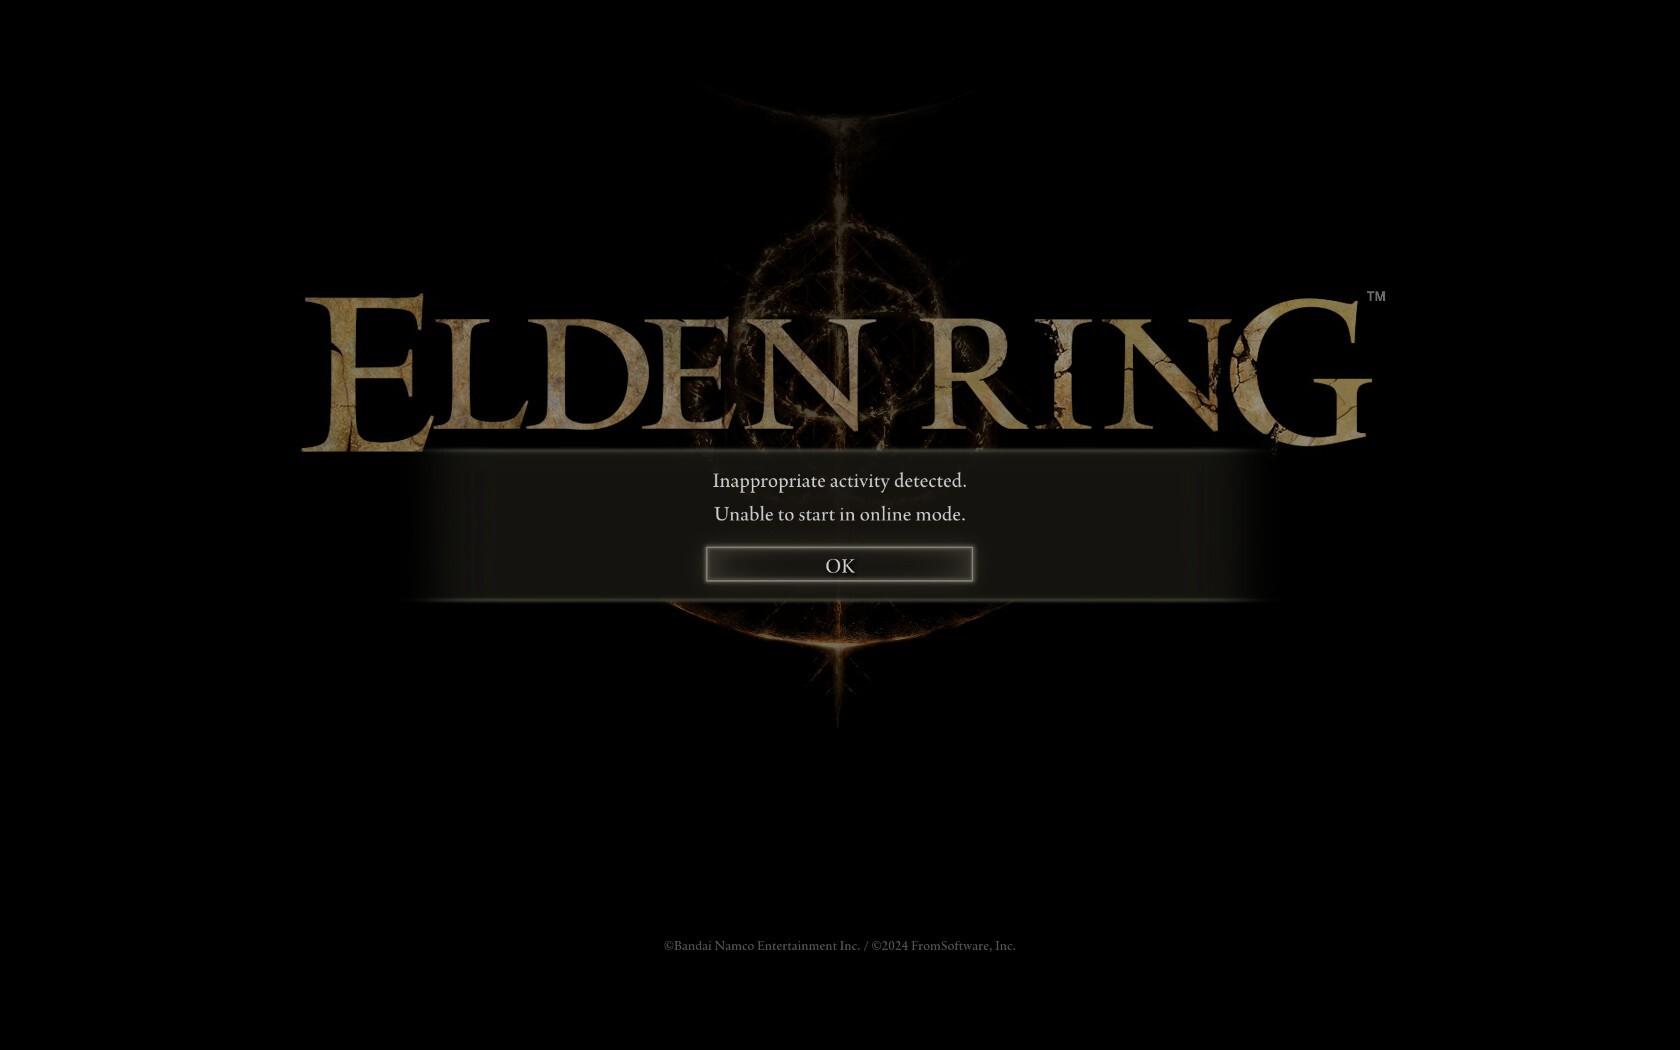 Elden Ring Inappropriate Activity error message